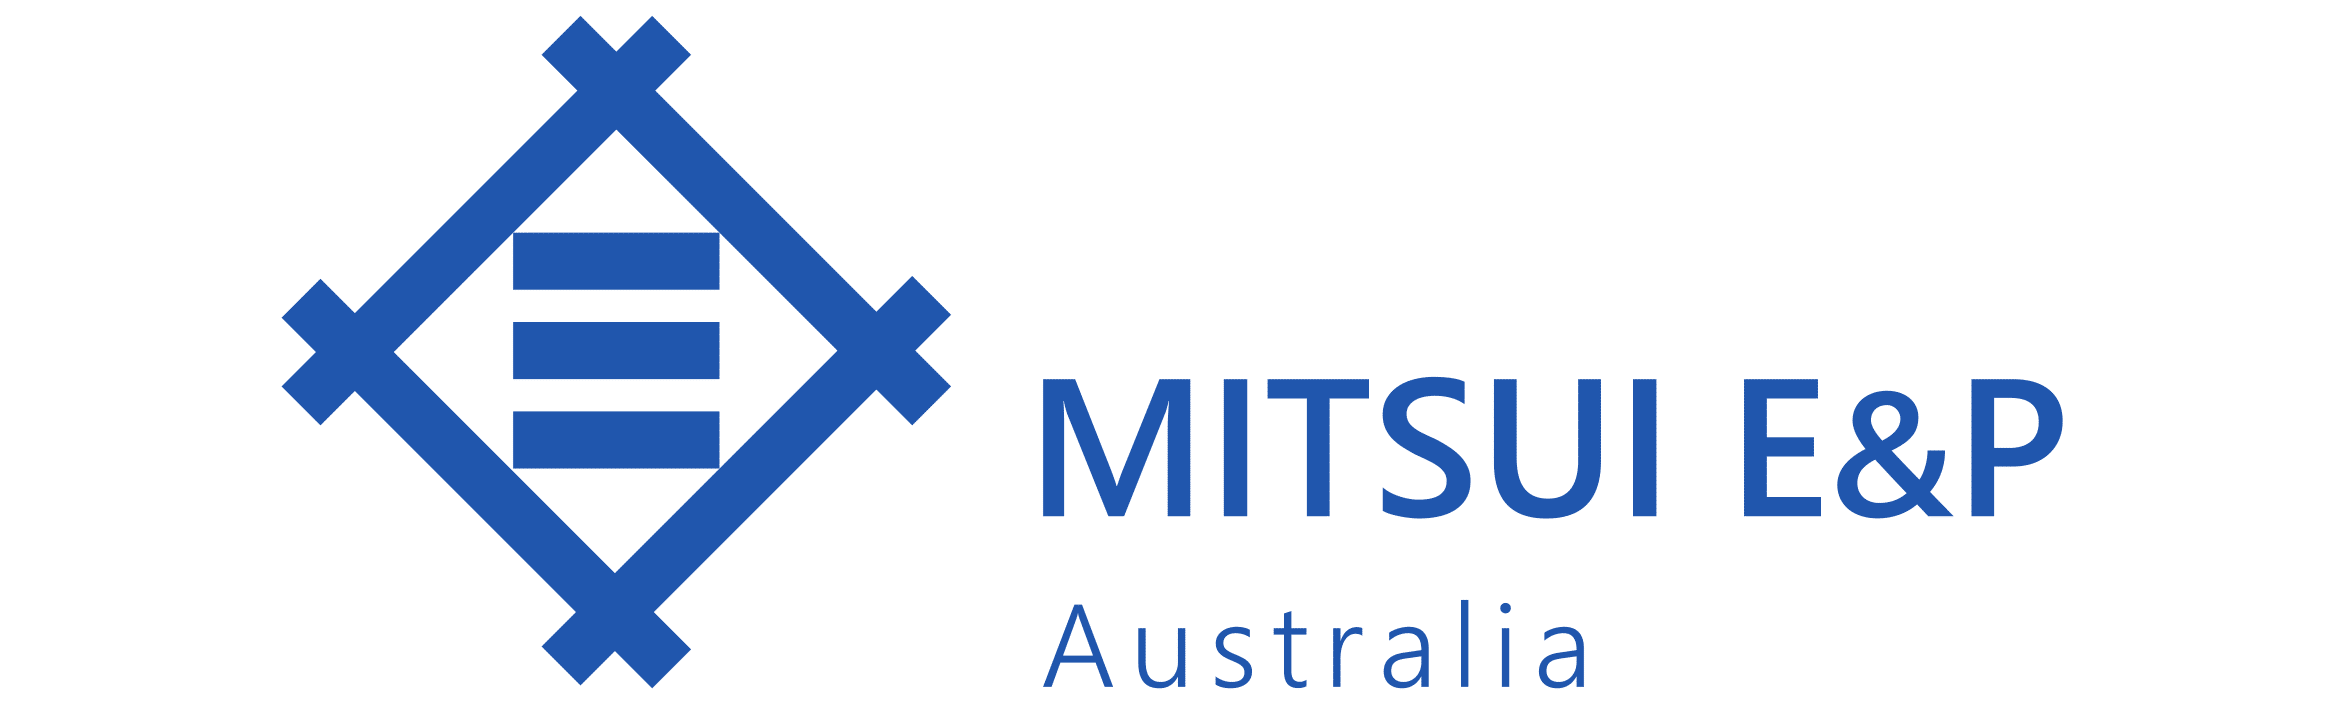 Mitsui Logo - Home E&P Australia in the Mid West